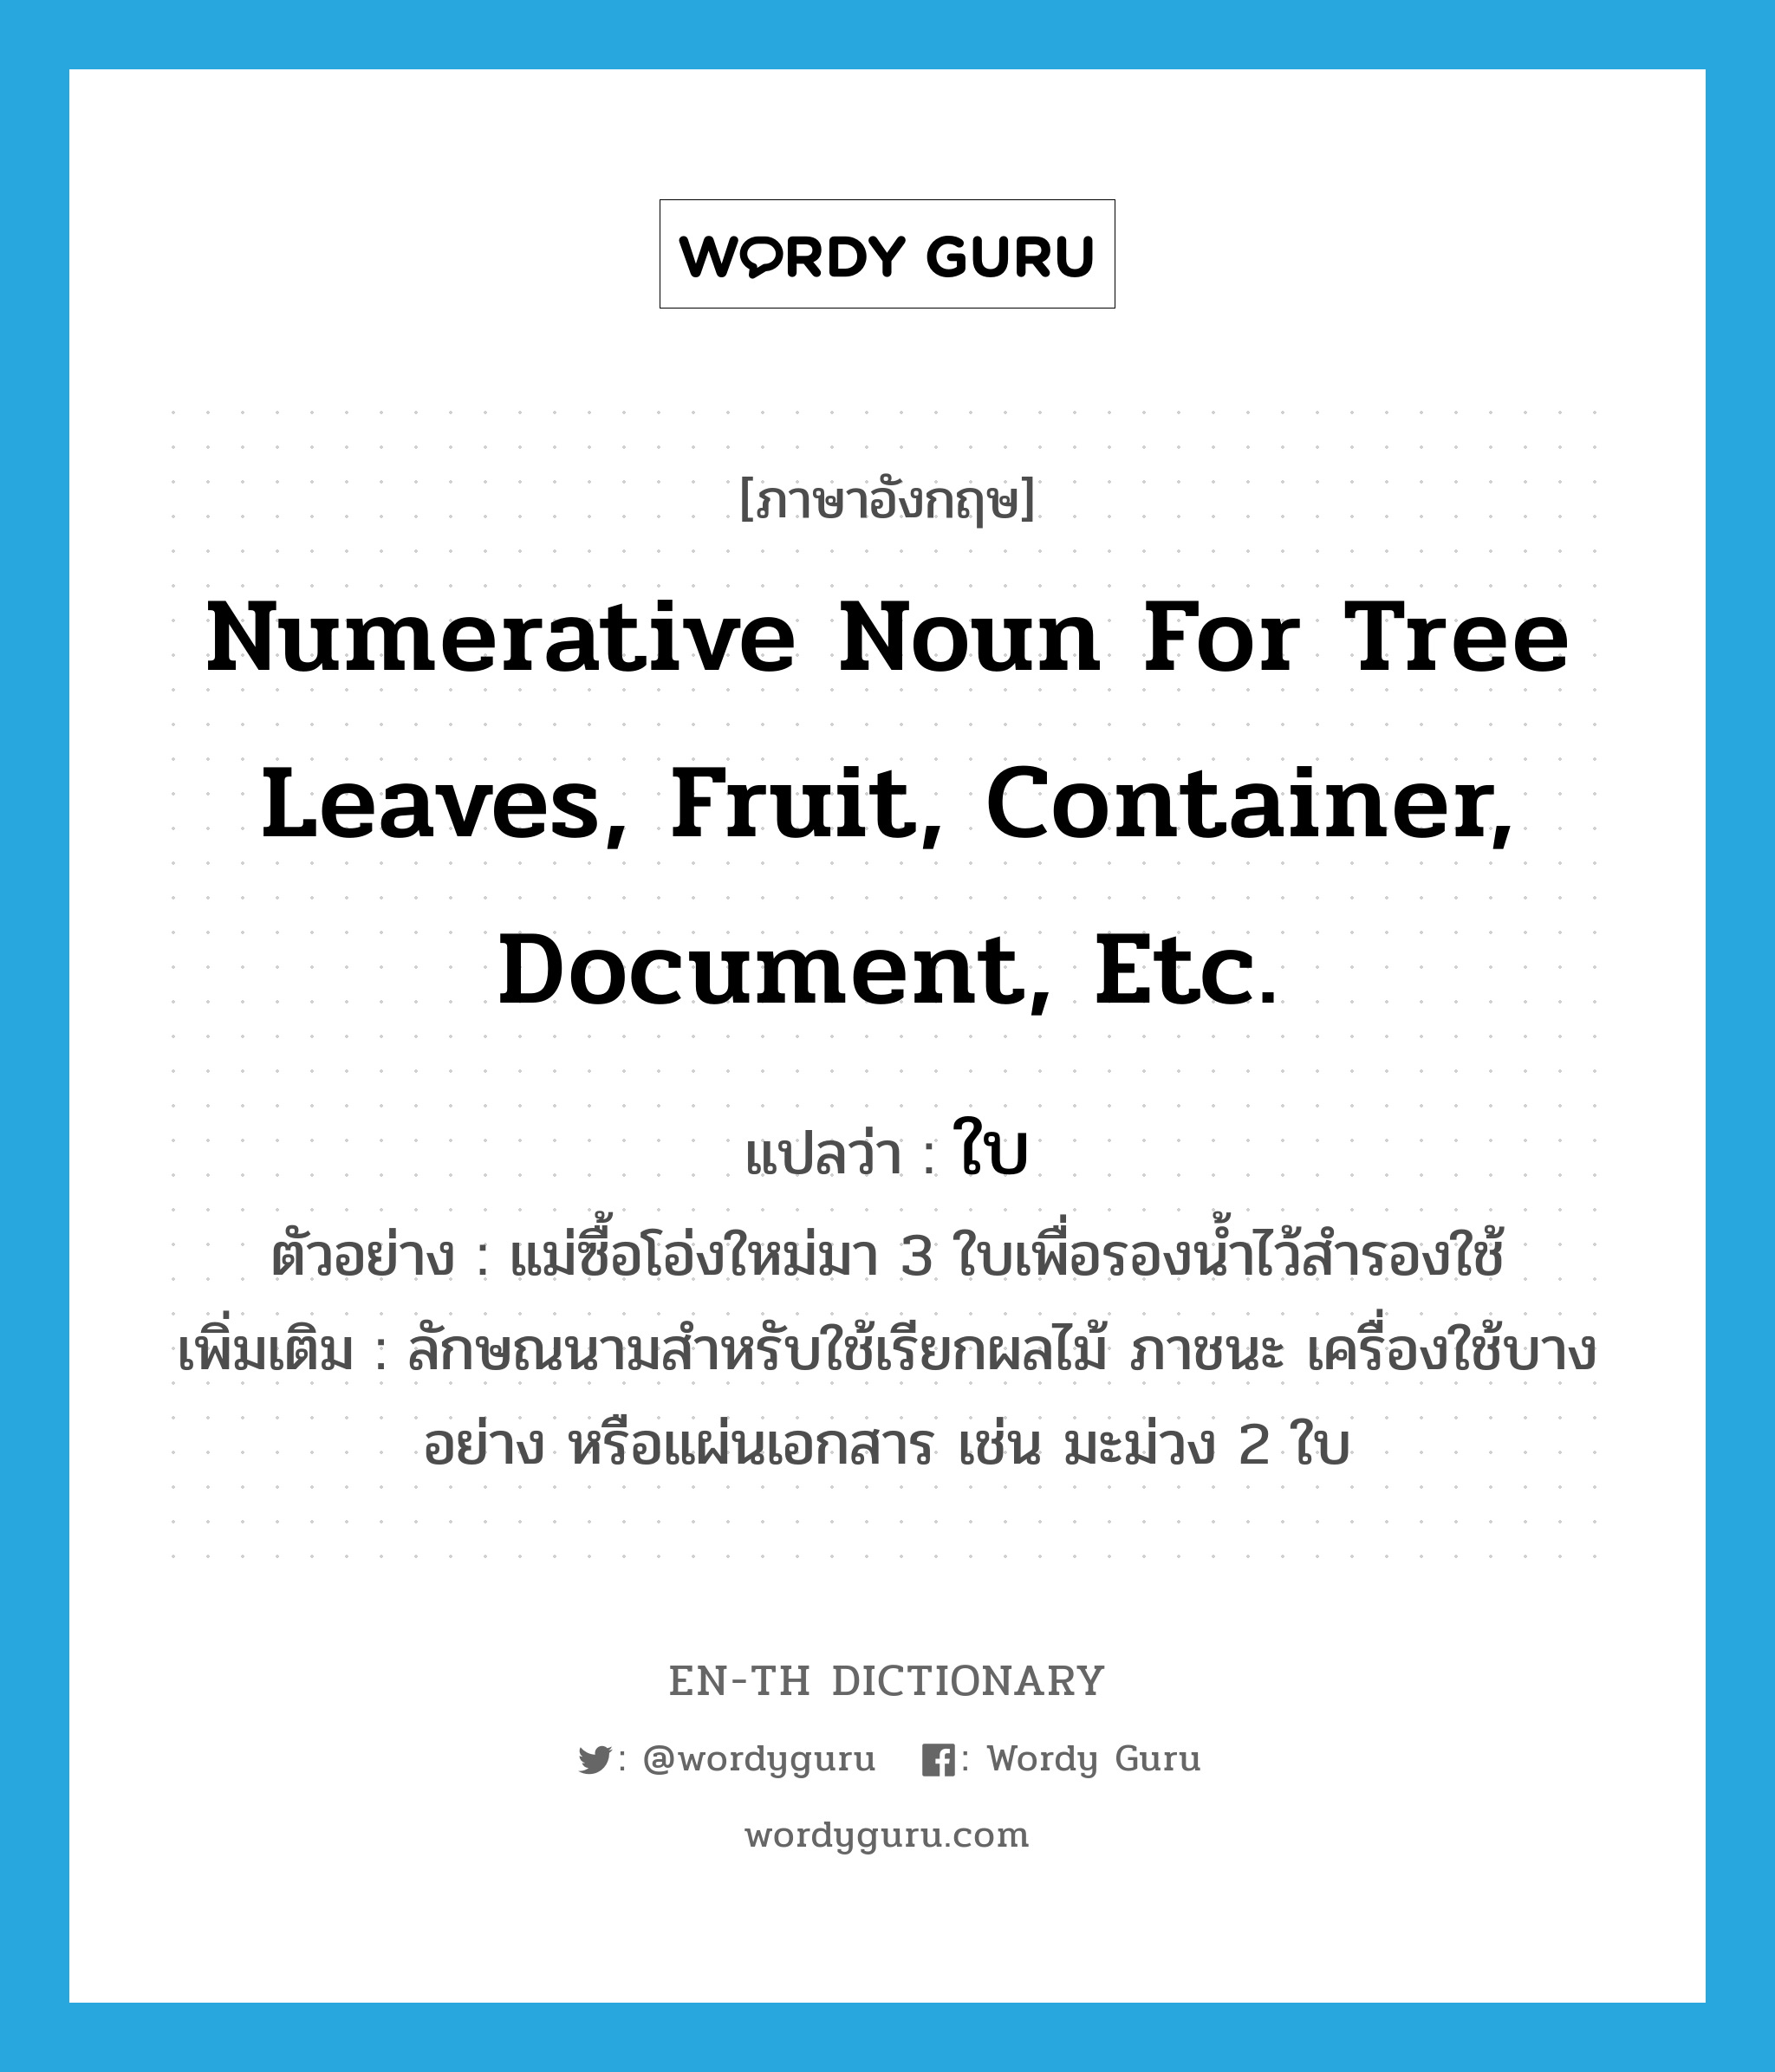 ใบ ภาษาอังกฤษ?, คำศัพท์ภาษาอังกฤษ ใบ แปลว่า numerative noun for tree leaves, fruit, container, document, etc. ประเภท CLAS ตัวอย่าง แม่ซื้อโอ่งใหม่มา 3 ใบเพื่อรองน้ำไว้สำรองใช้ เพิ่มเติม ลักษณนามสำหรับใช้เรียกผลไม้ ภาชนะ เครื่องใช้บางอย่าง หรือแผ่นเอกสาร เช่น มะม่วง 2 ใบ หมวด CLAS